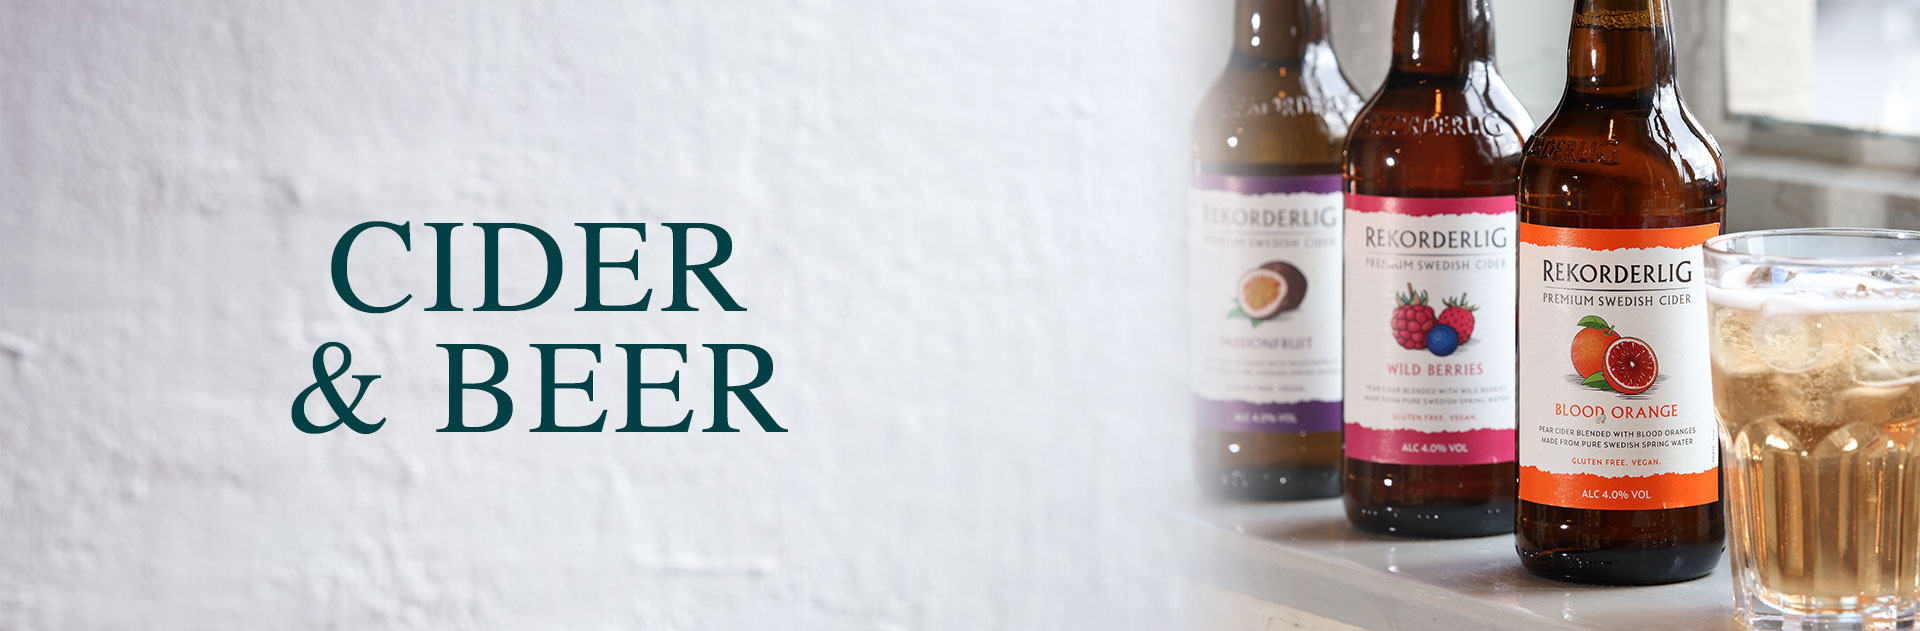 Beer & Cider at Ember Woodpecker